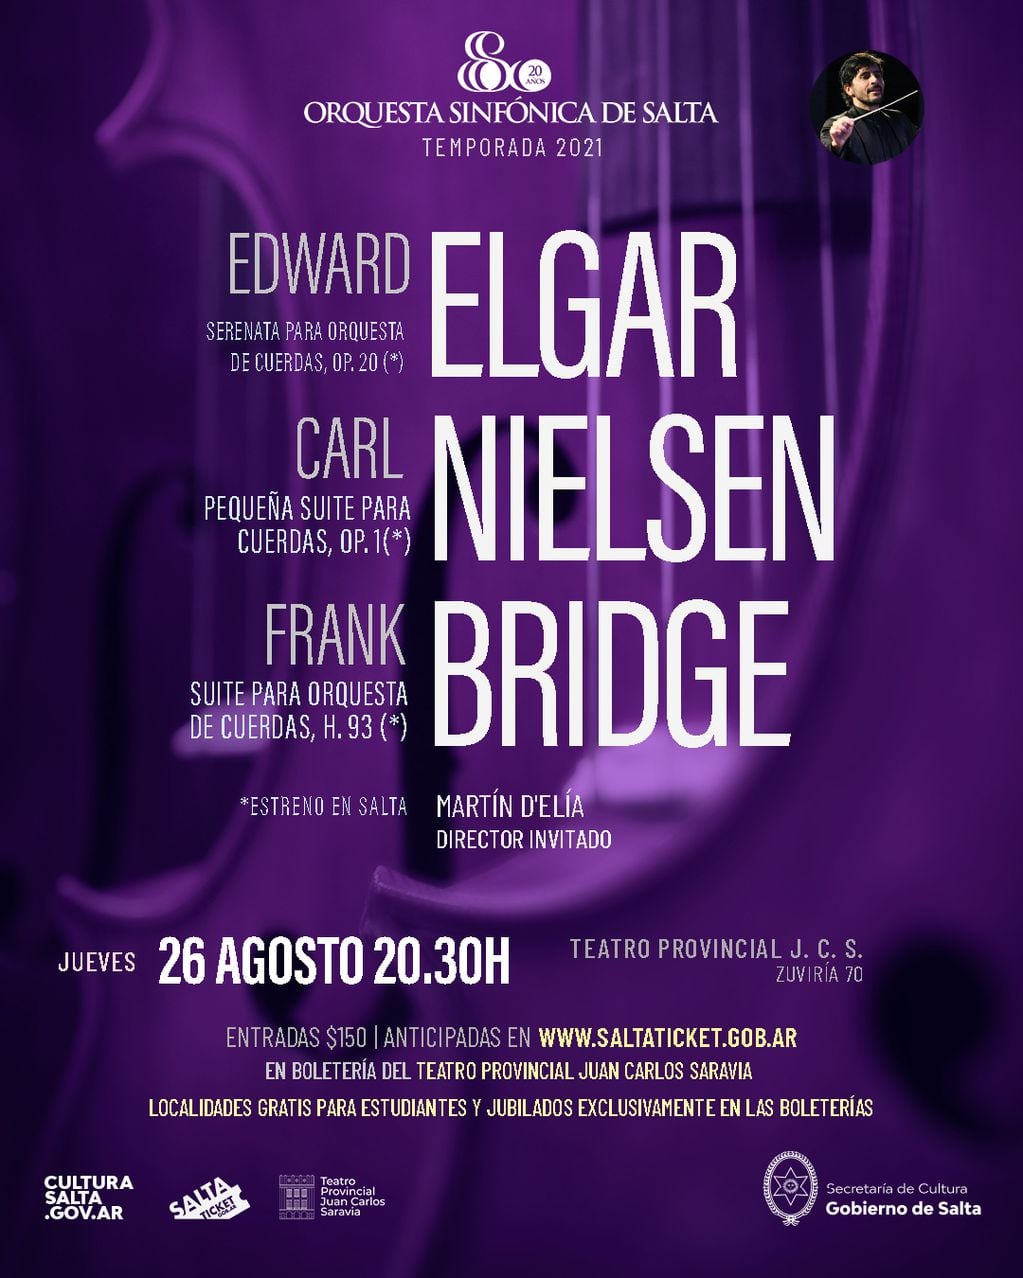 El concierto es este jueves 26 de agosto a las 20.30 en el Teatro Provincial.